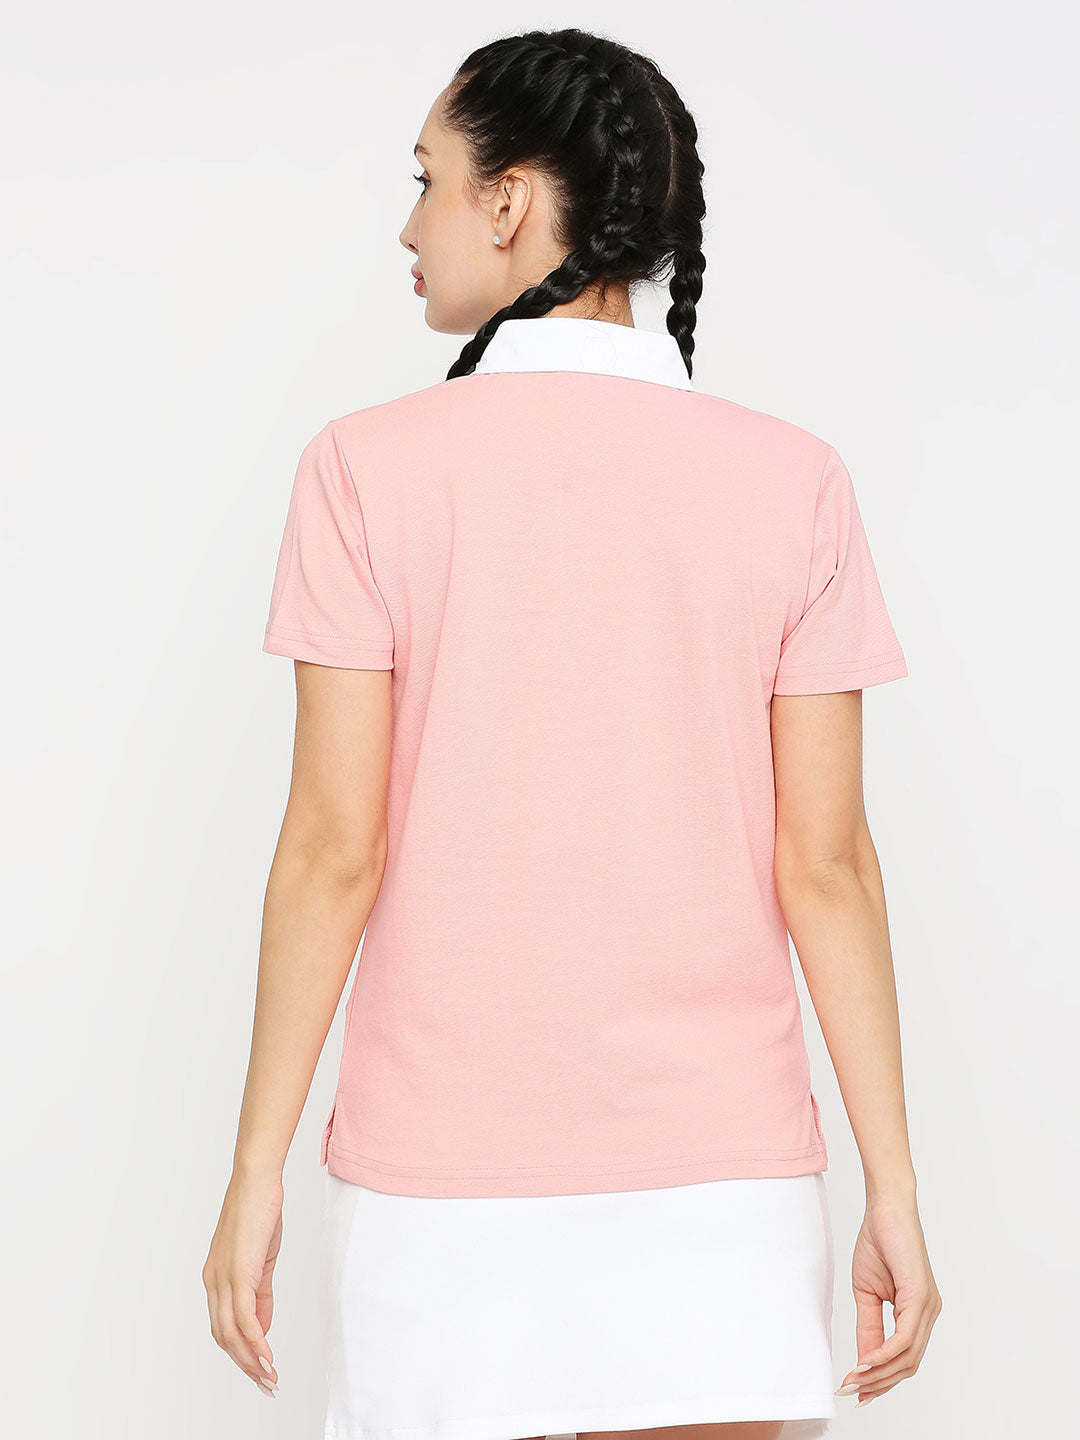 Women's Tennis Polo Shirt - Pink